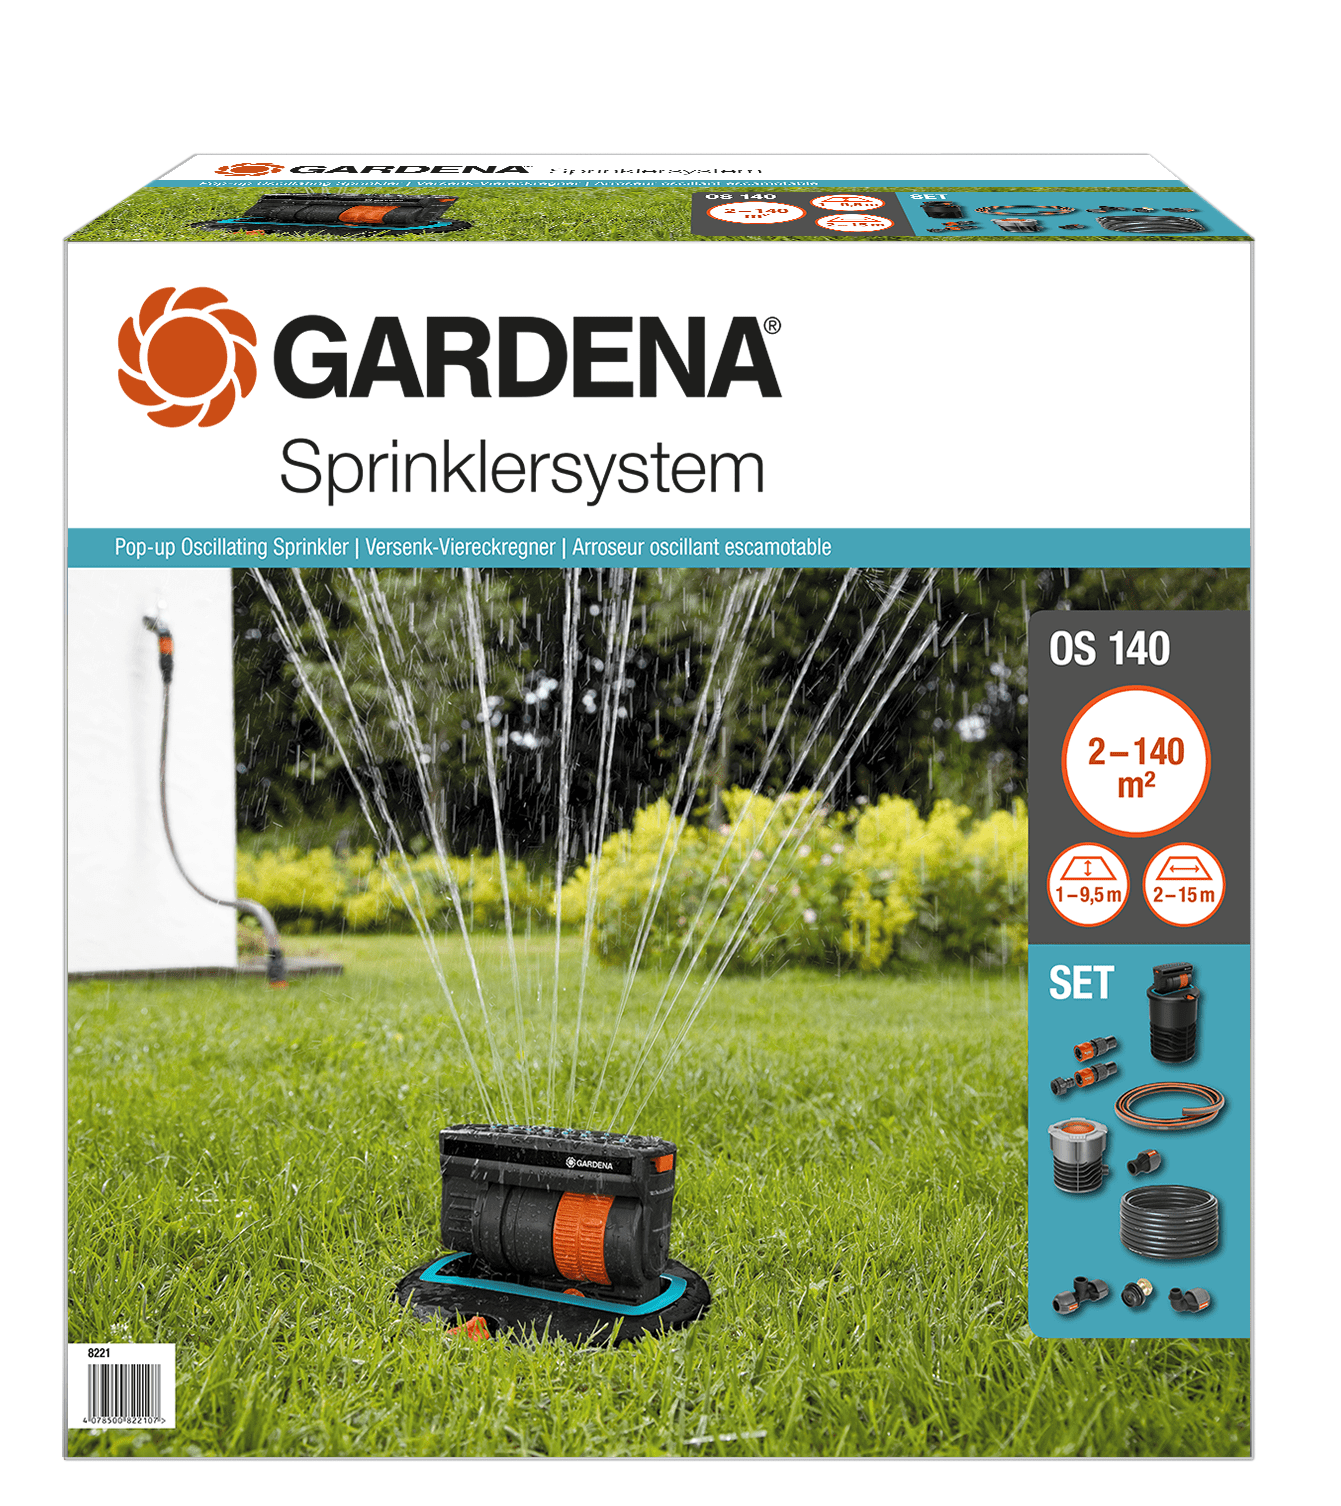 Gardena Komplett-Set + Versenk-Viereckregner OS140